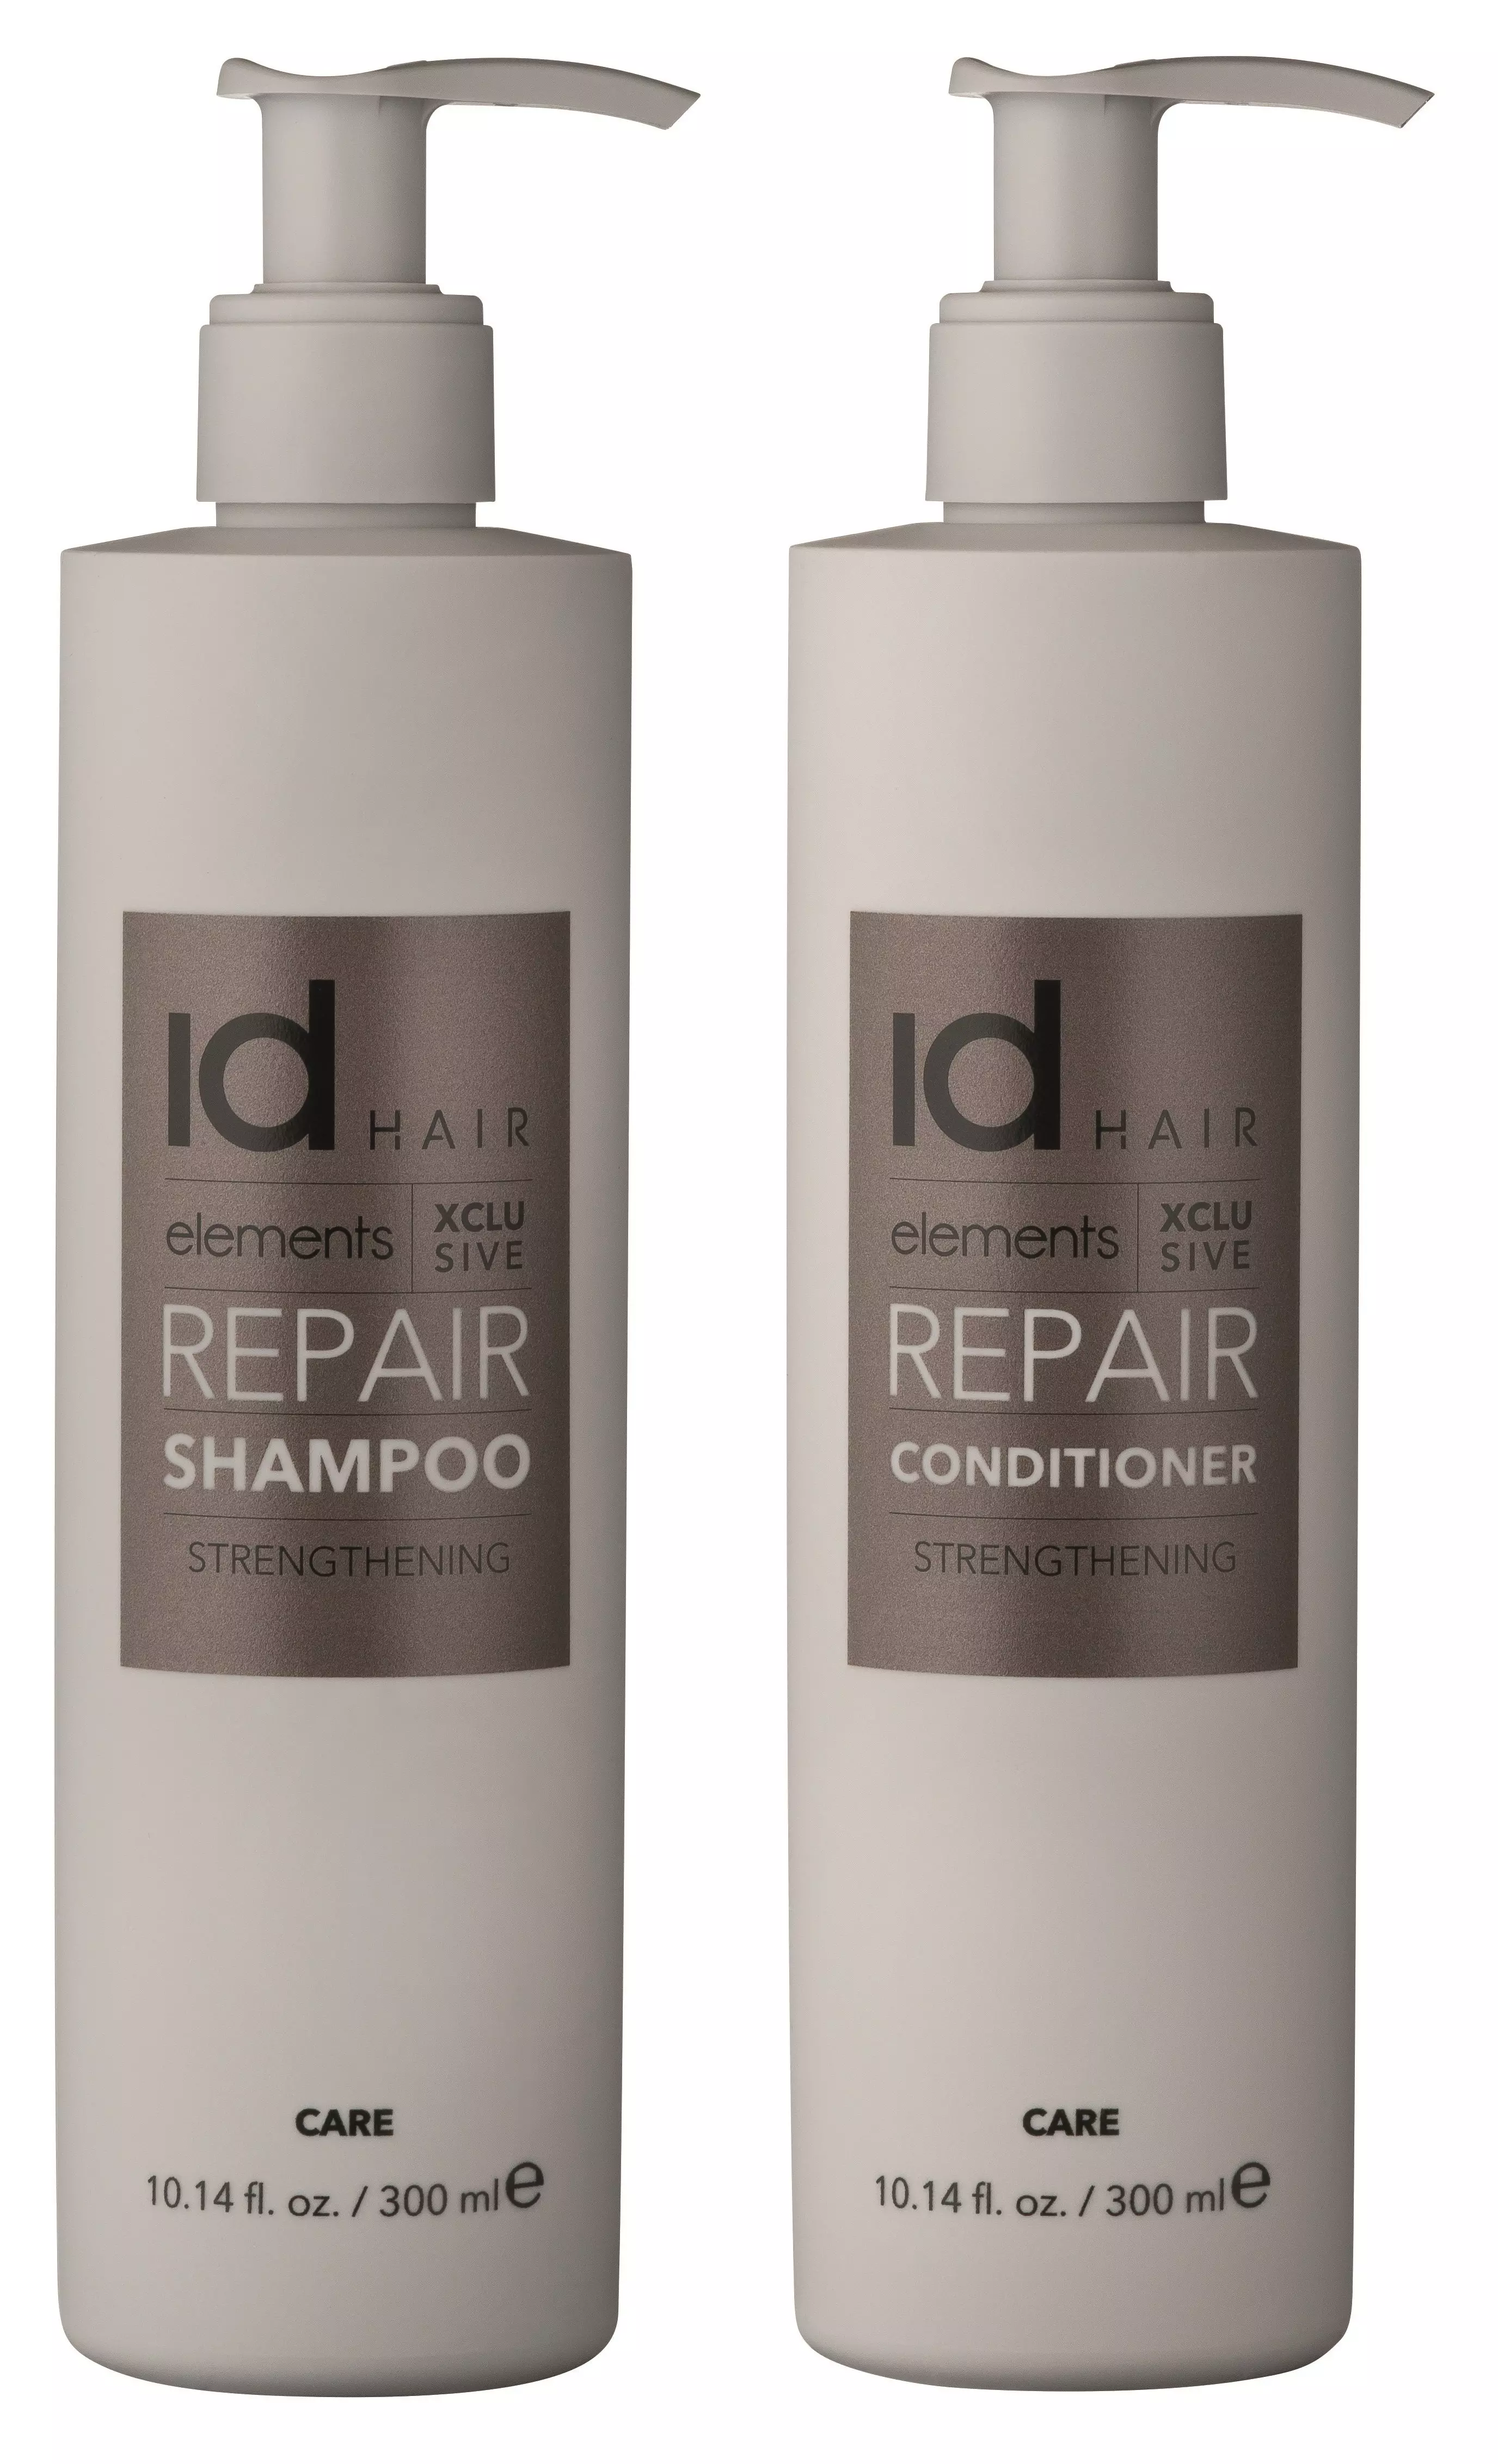 Idhair Elements Xclusive Repair Shampoo Ml